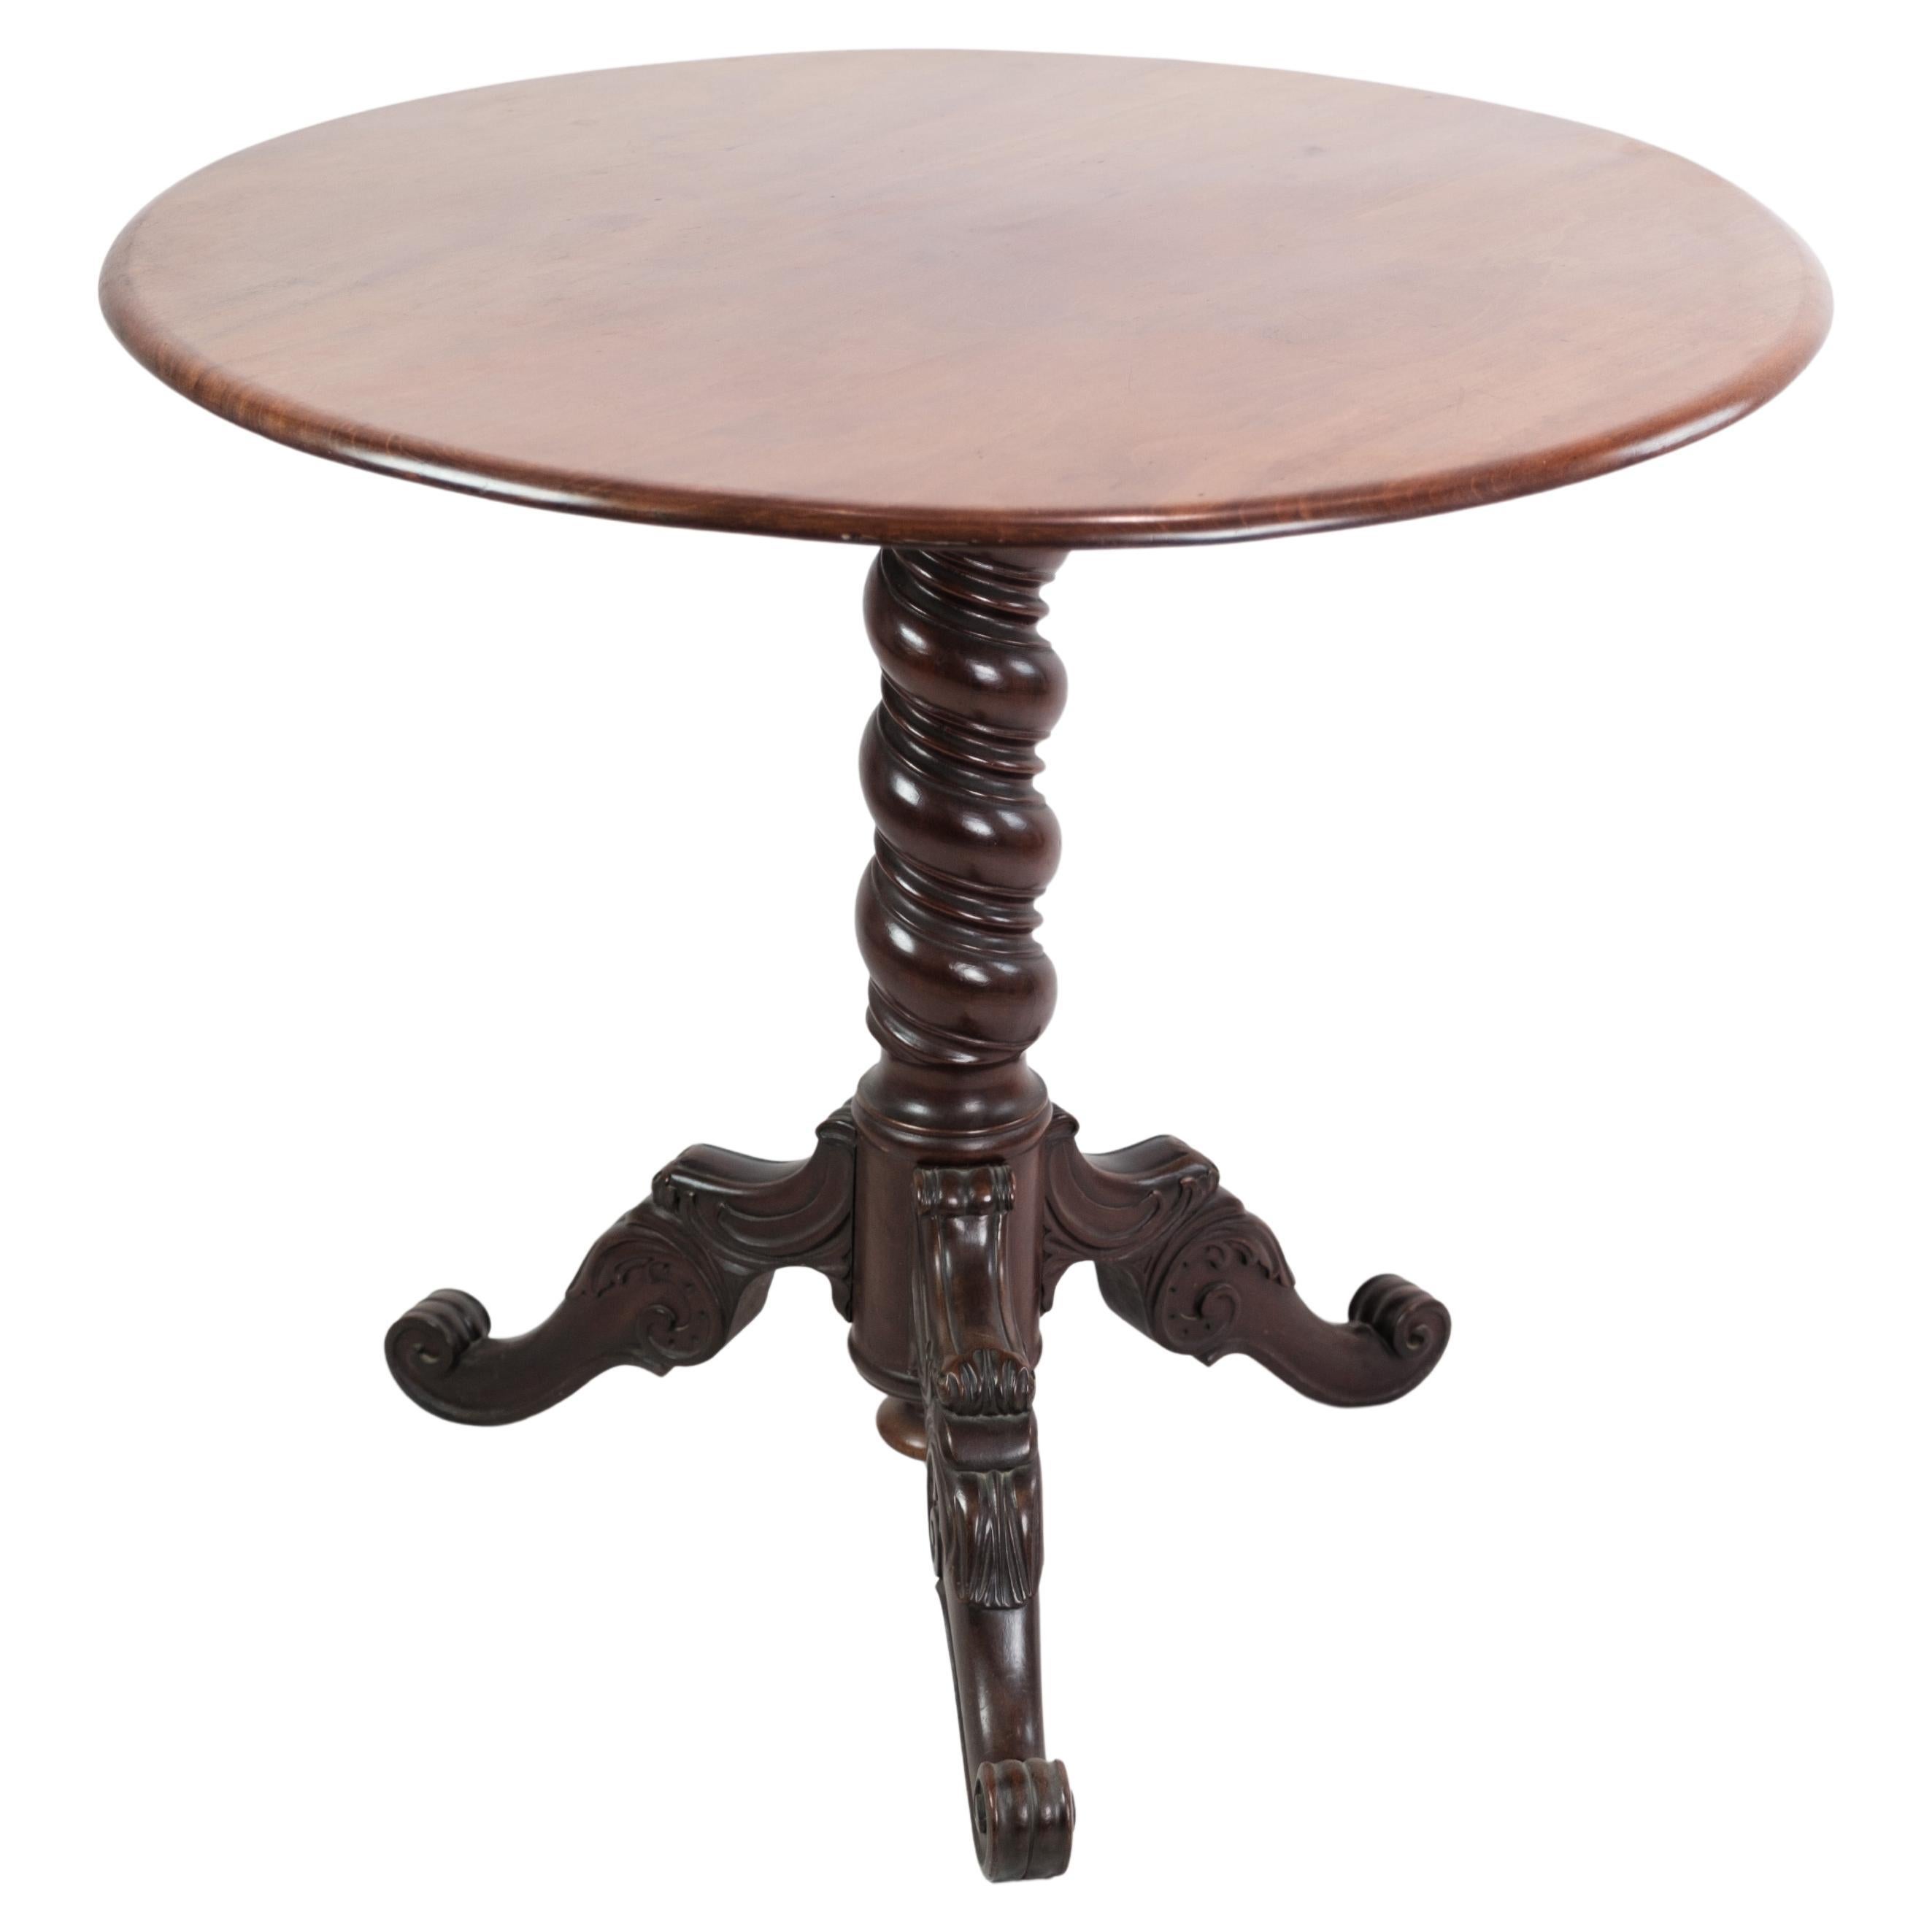 The Pedestal Tisch / Beistelltisch aus Dänemark in Mahagoni aus den 1860er Jahren gemacht